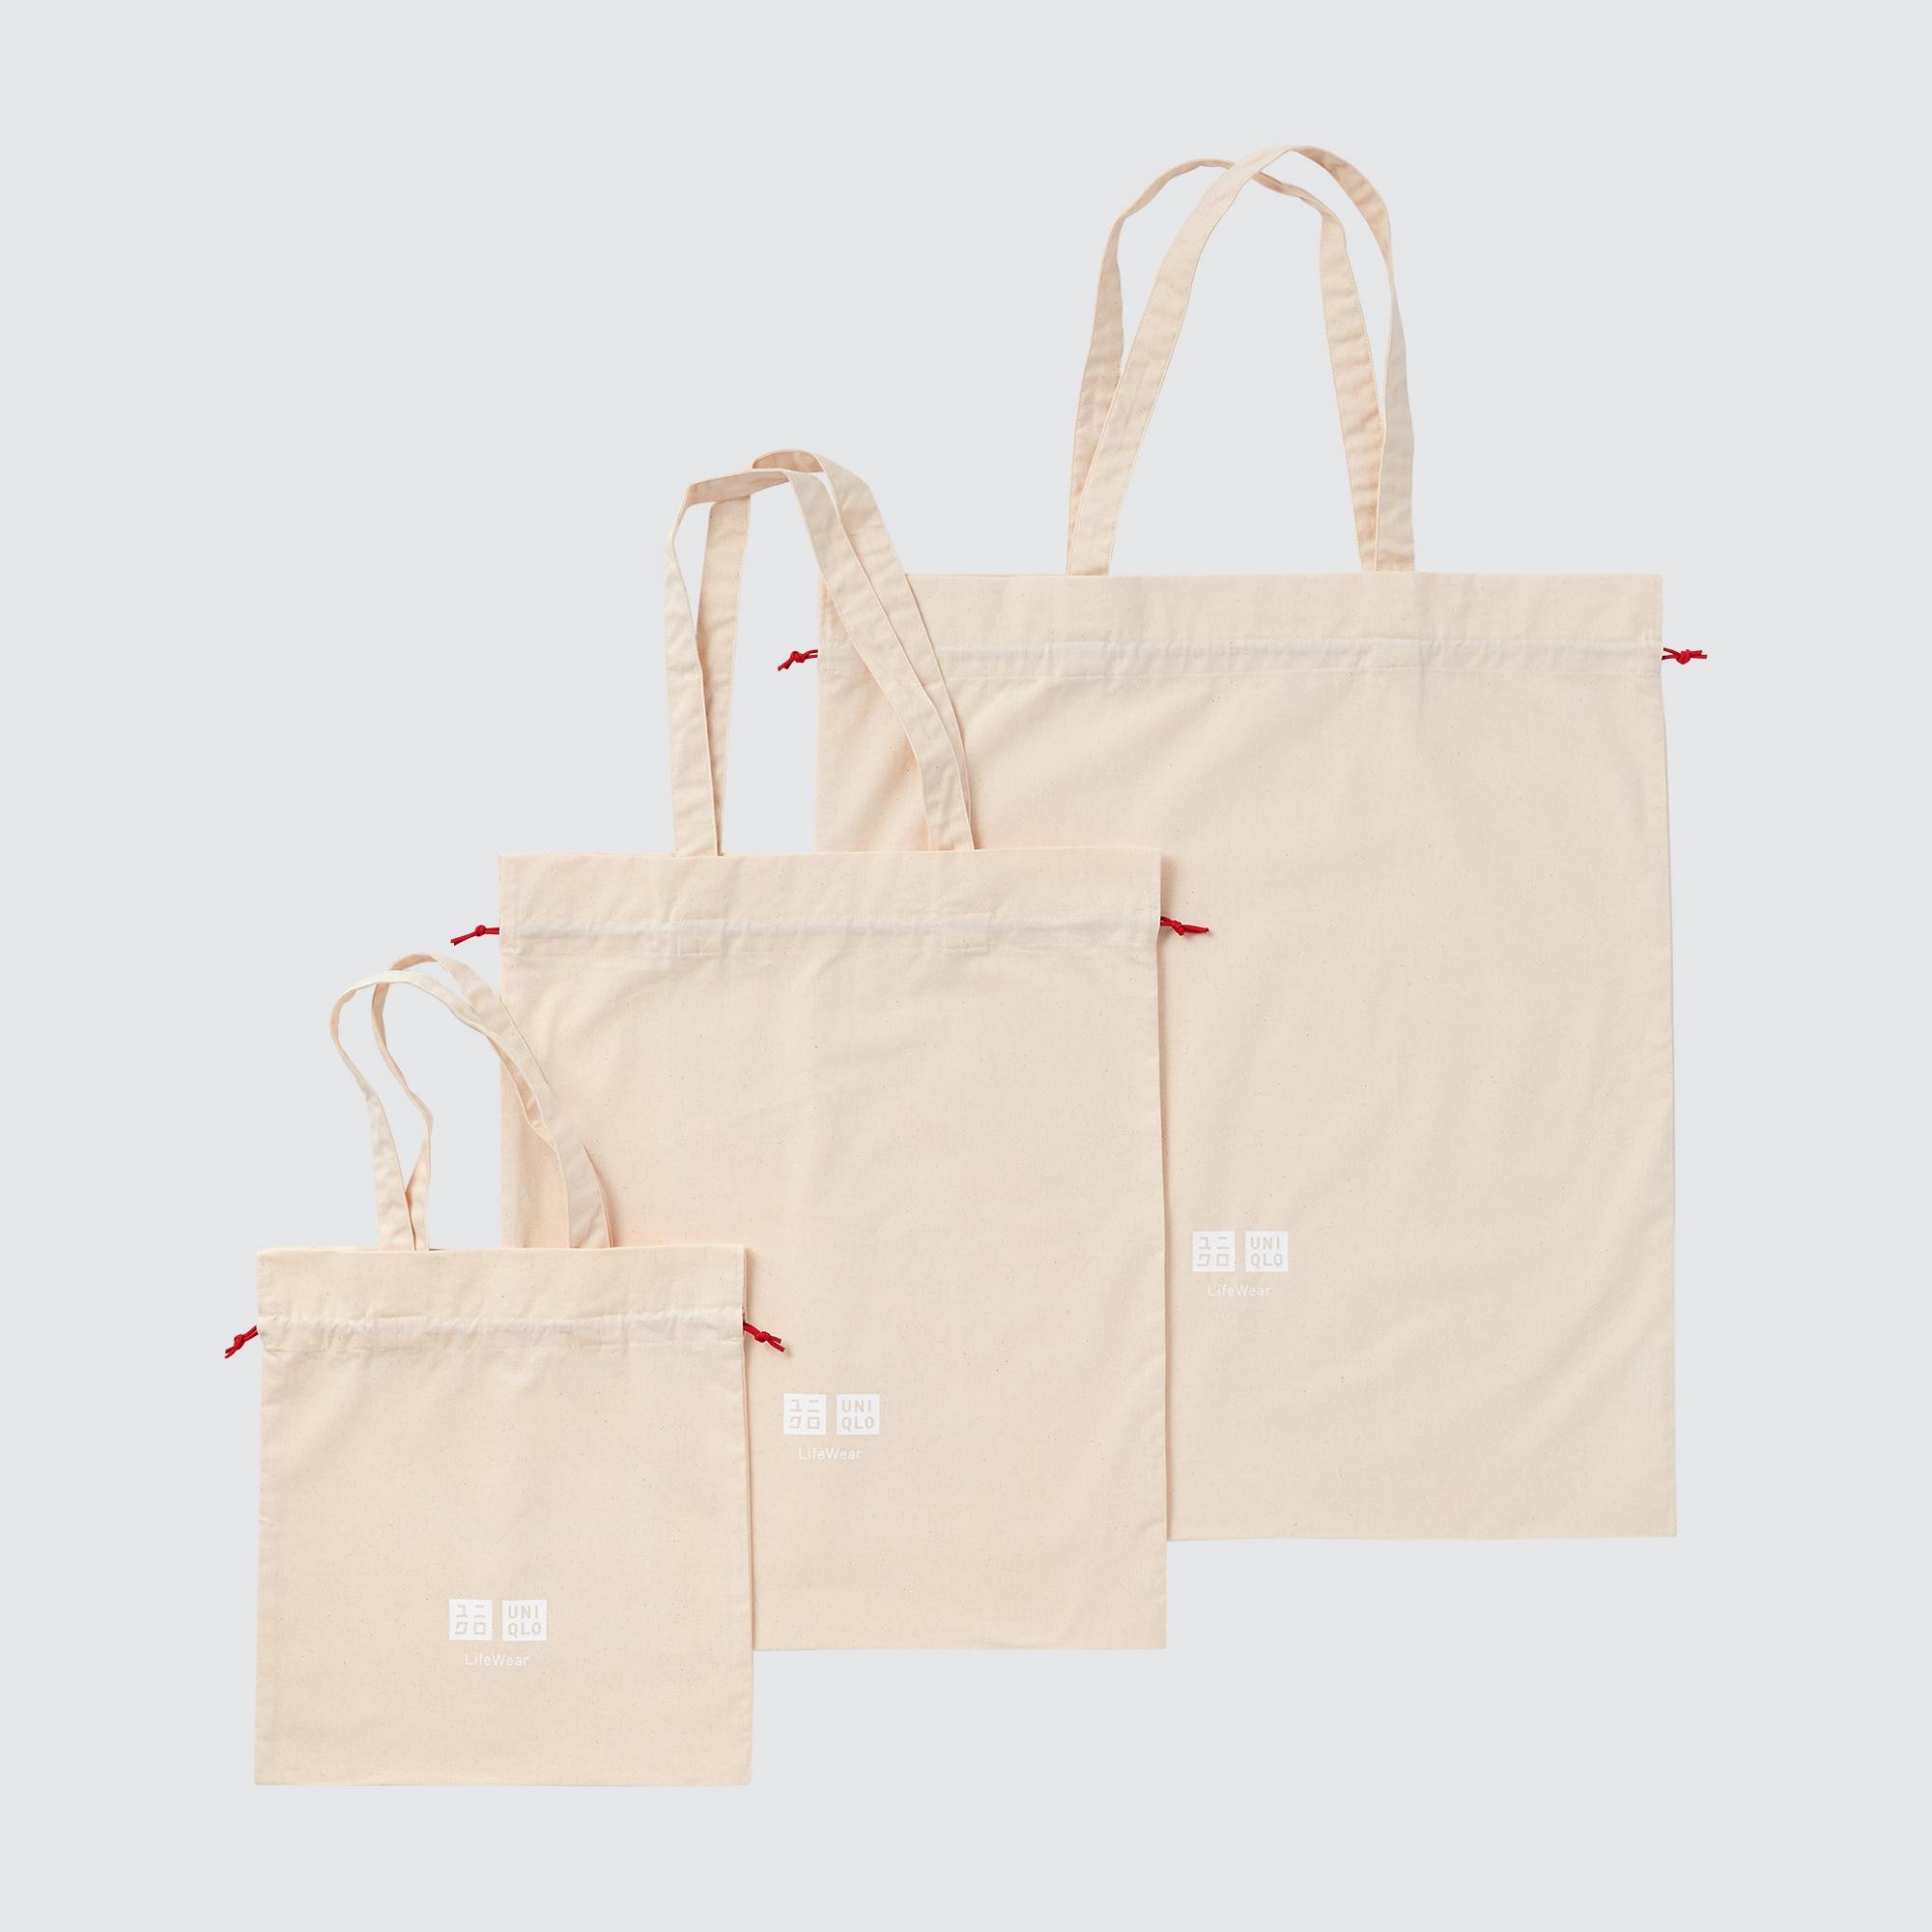 Brand New UNIQLO KAWS Canvas Tote Bag w Tag  eBay